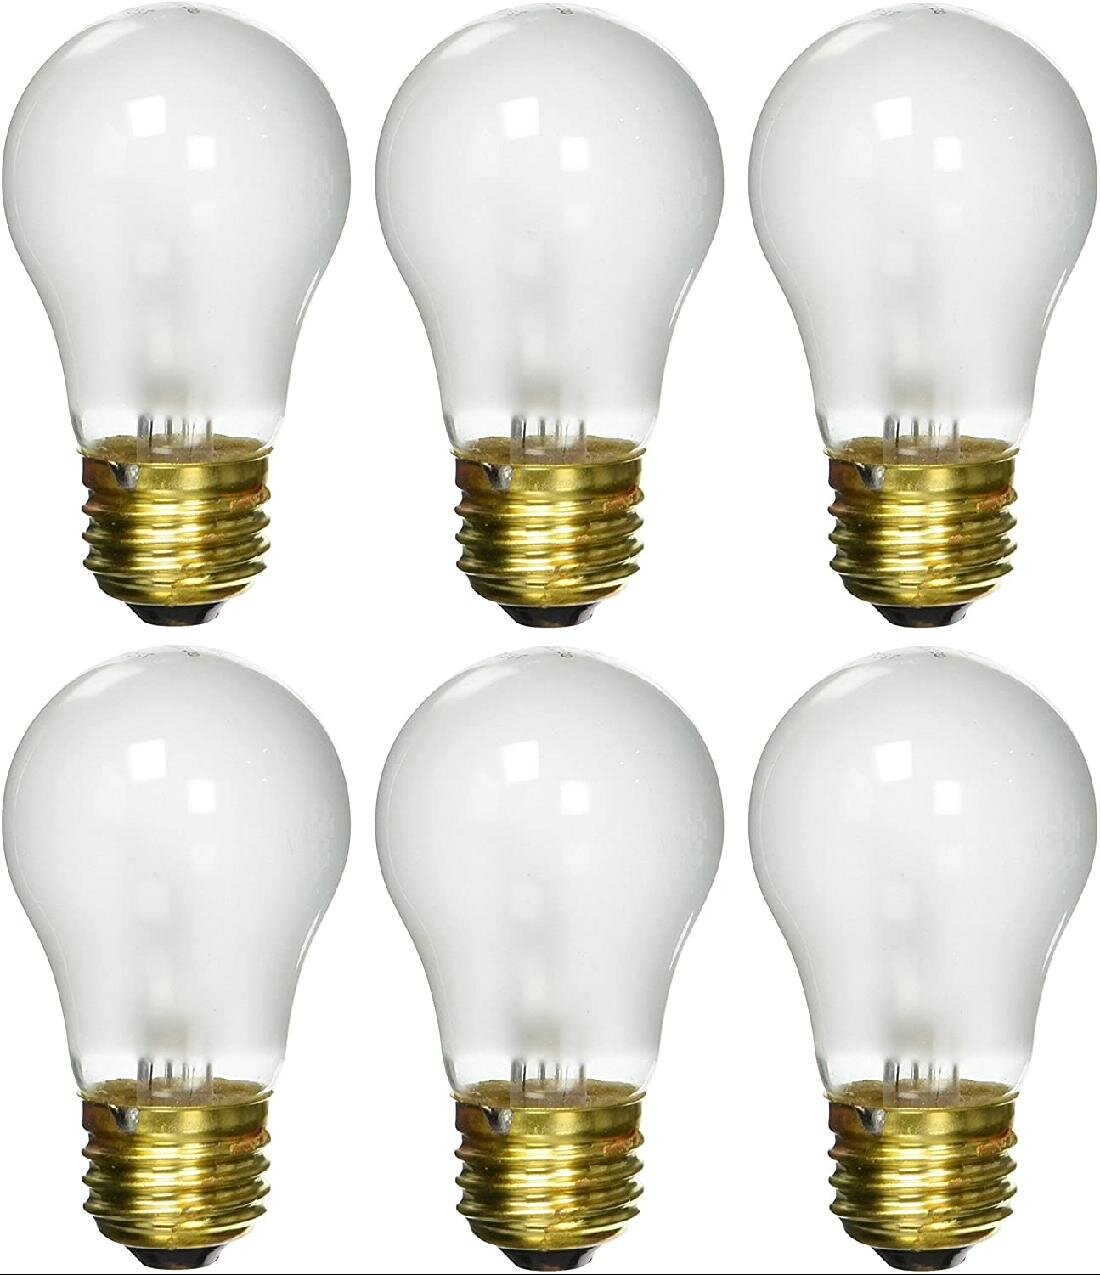 6 pack 15-Watt Decorative A15 Incandescent Light Bulb Medium E26 Standard Base 